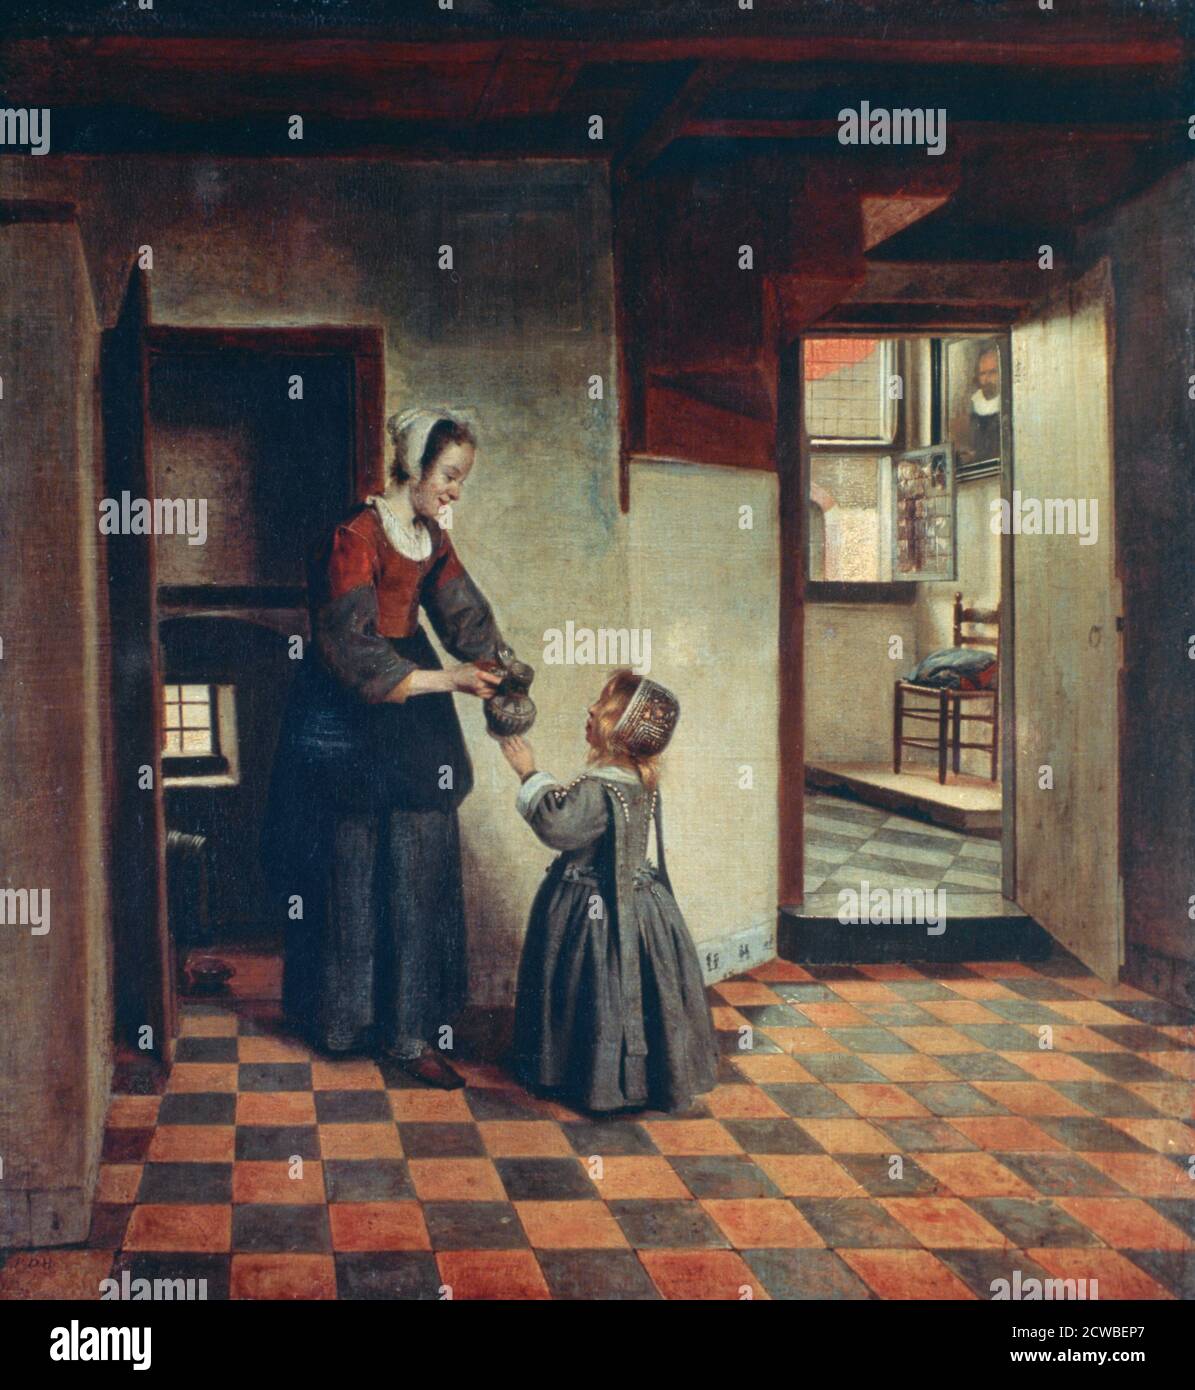 Frau mit Kind in einer Speisekammer', c1660. Künstler: Pieter de Hooch. Pieter de Hooch (1629-1684) war ein niederländischer Maler des Goldenen Zeitalters, der für seine Genrewerke ruhiger häuslicher Szenen berühmt war. Stockfoto